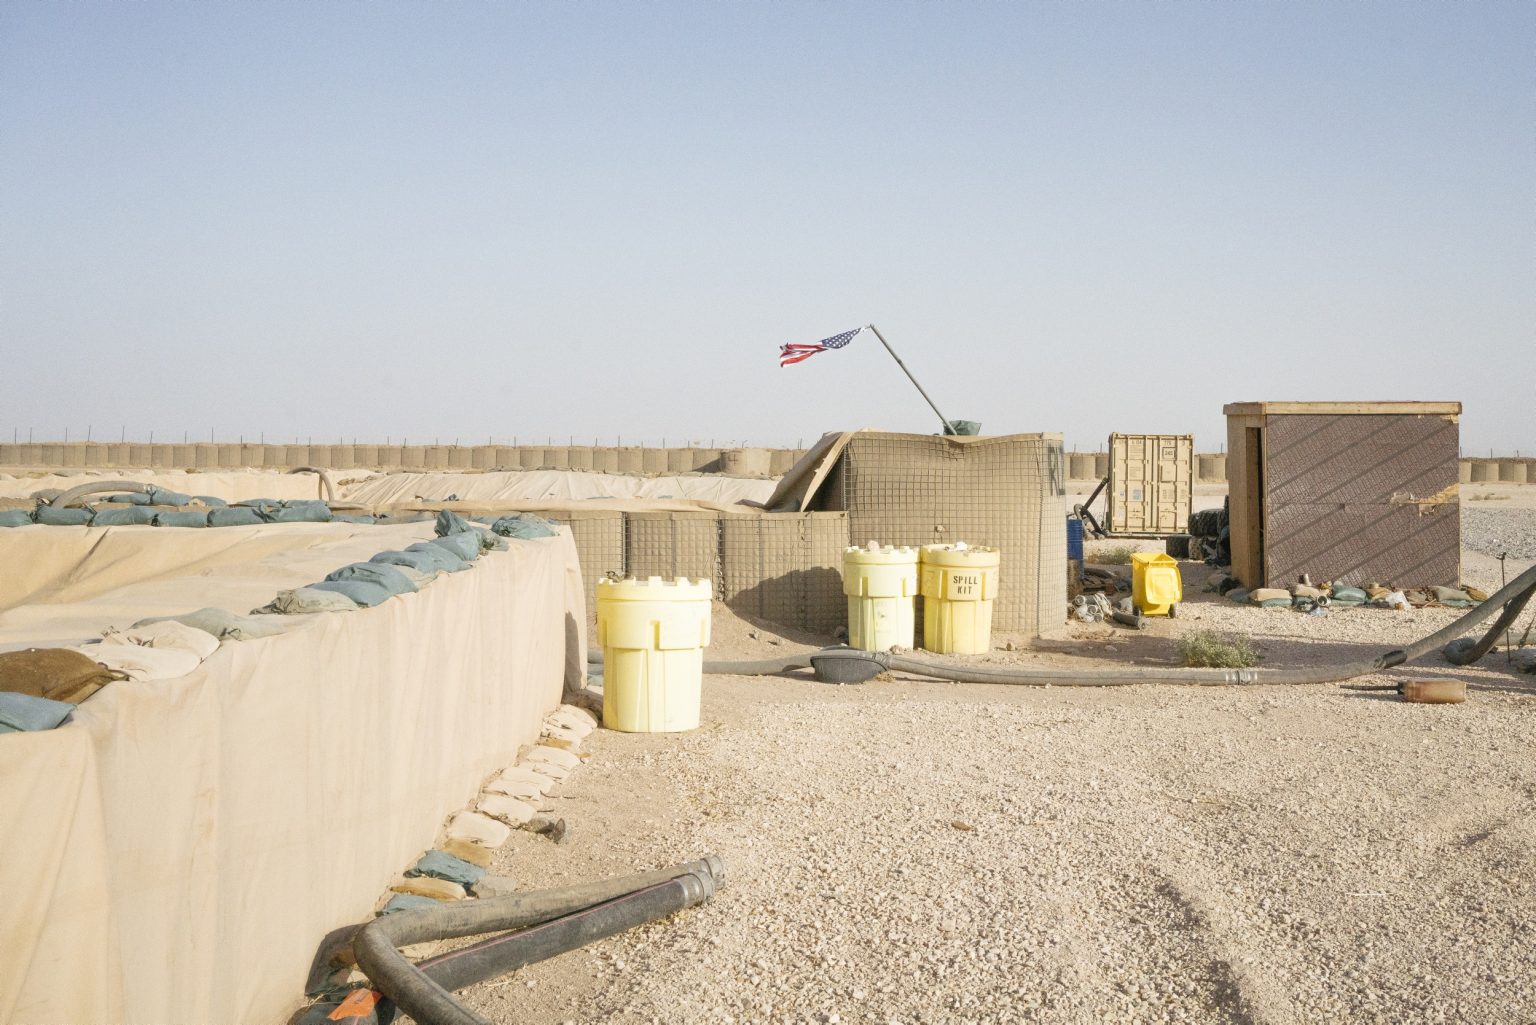 SYRIA. August 24, 2021 - An American flag hoisted on a pole inside a remote U.S. Army combat outpost in northeastern Syria known as RLZ.

SIRIA. Agosto 24, 2021 - Una bandiera americana all'interno di un avamposto americano conosciuto come RLZ, nel nord-est della Siria.